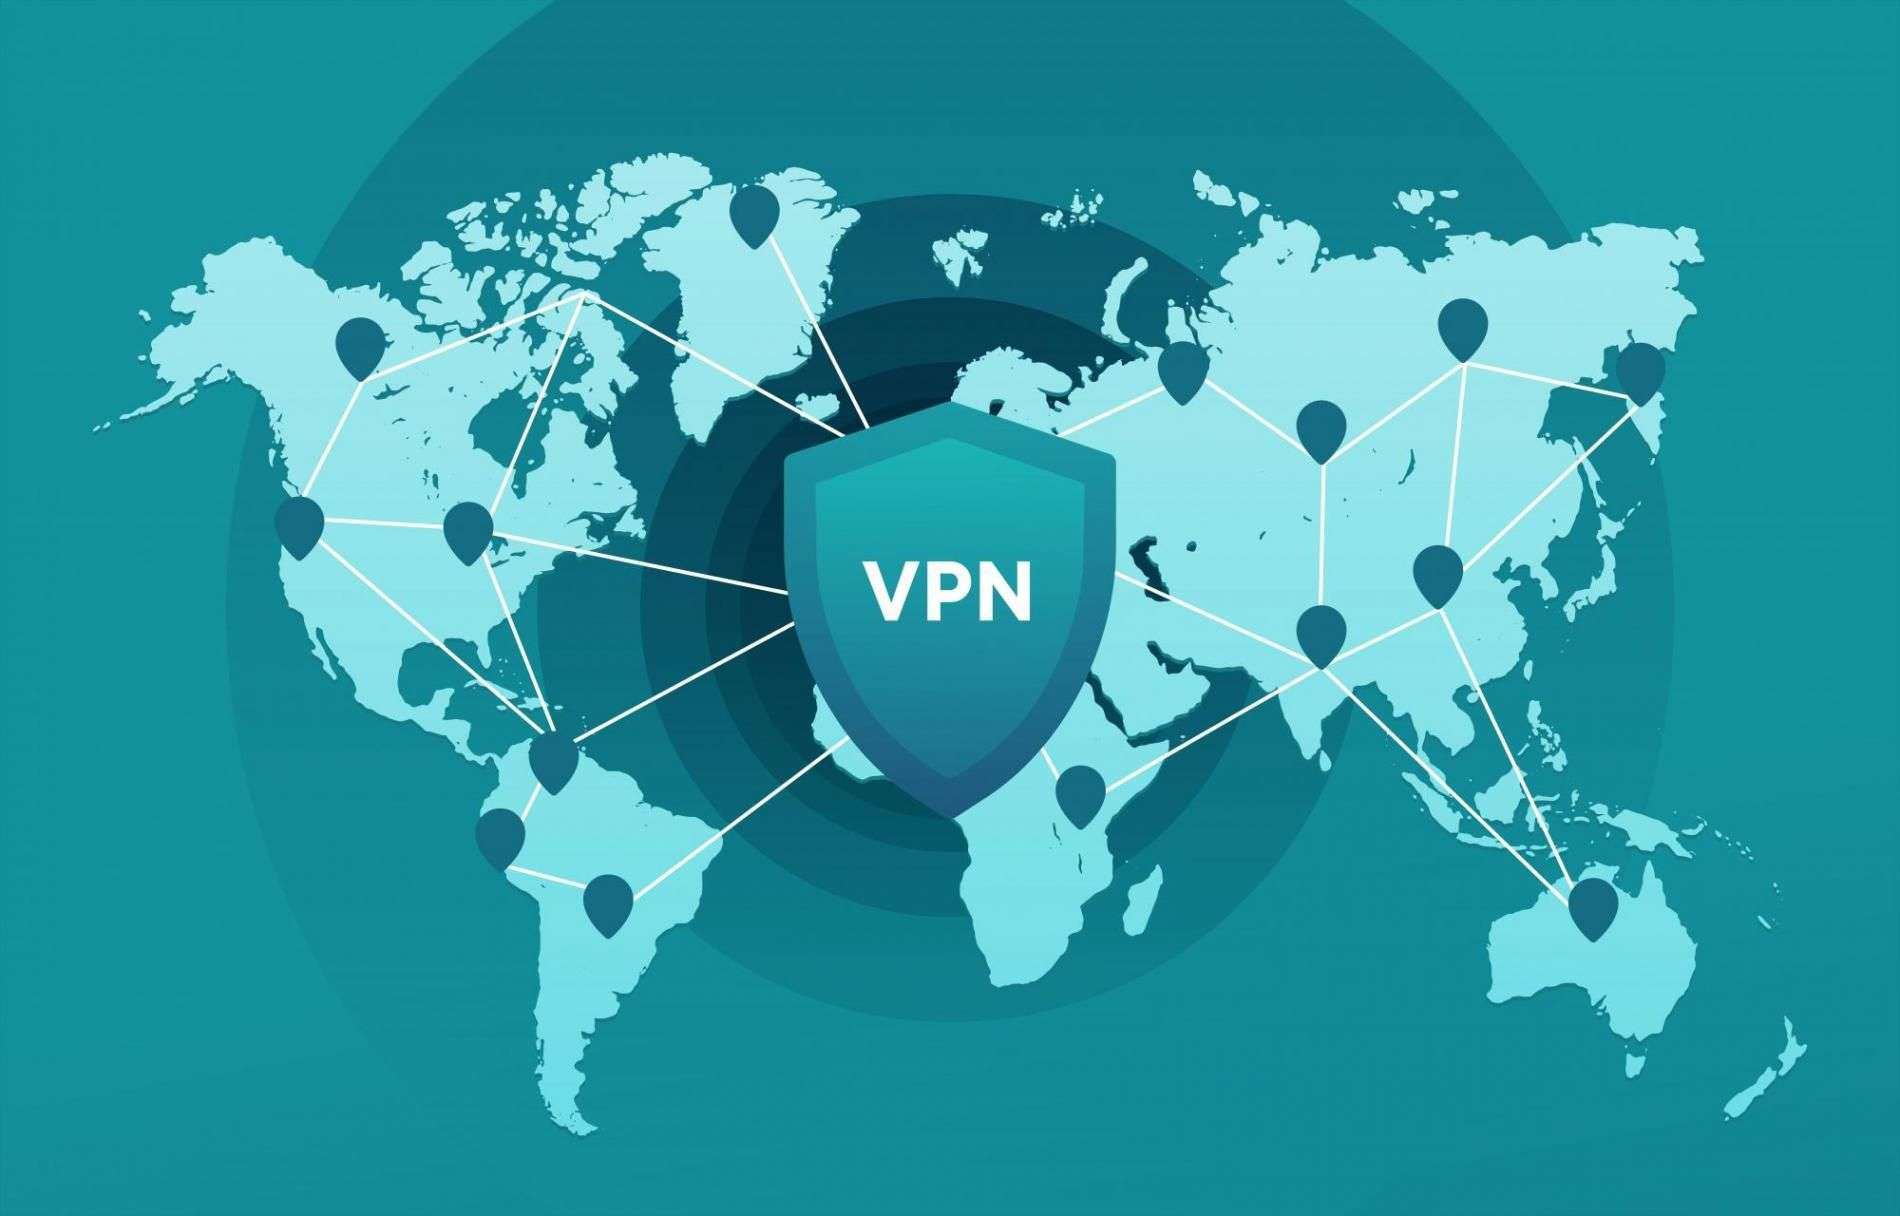 Все о VPN, часть 3: применимость в обычной жизни и легальность относительно российского законодательства